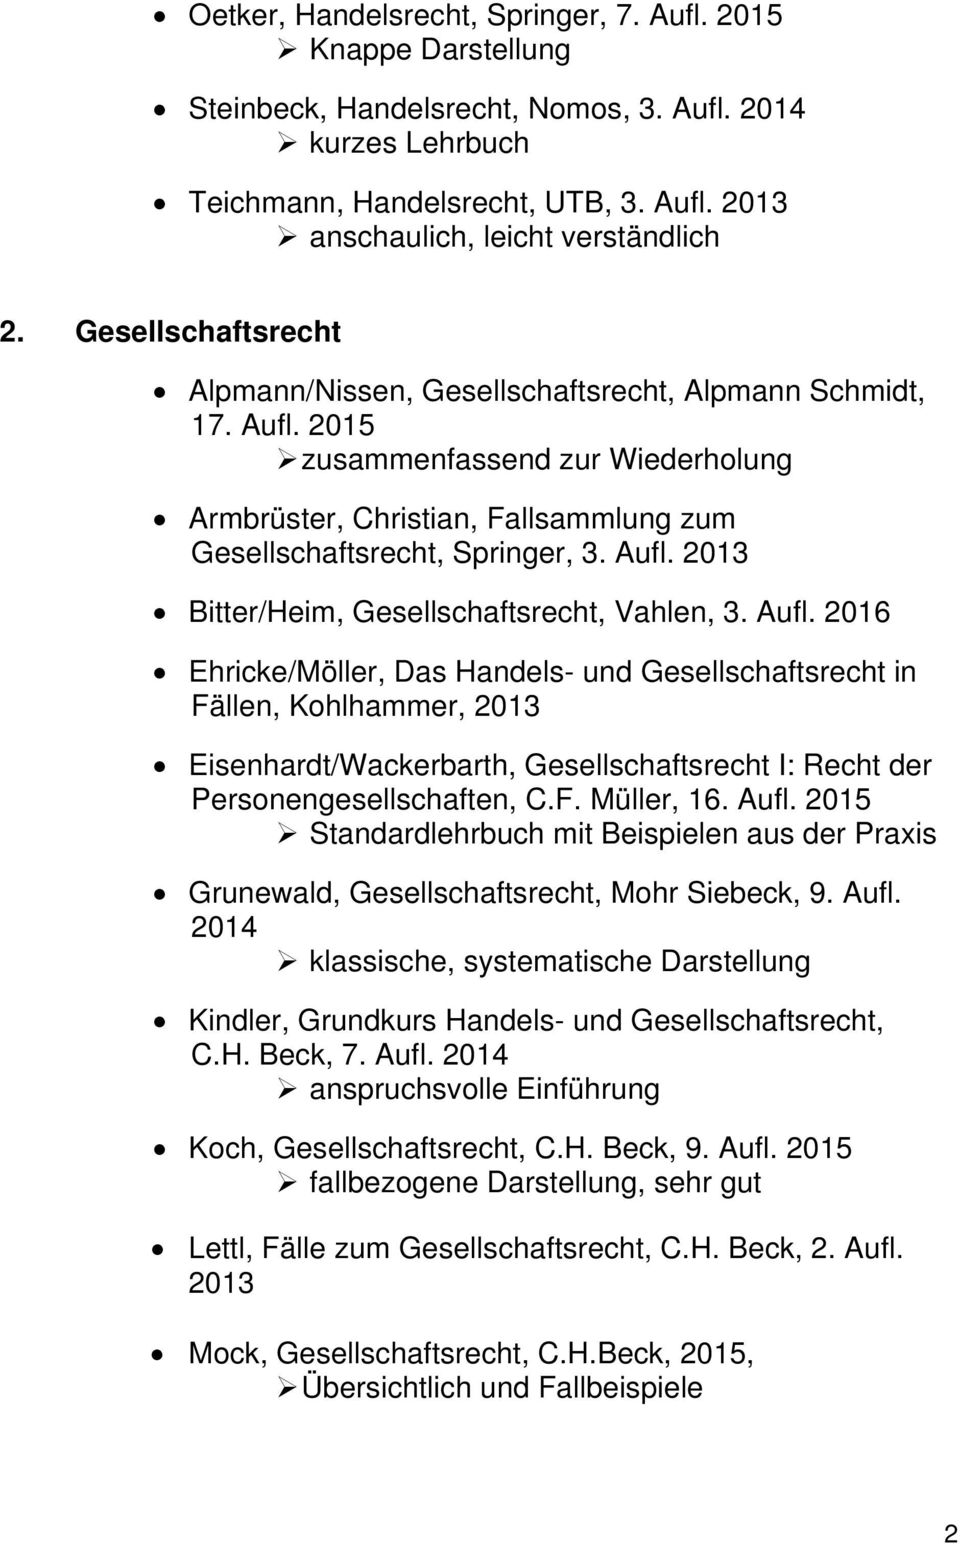 Aufl. 2016 Ehricke/Möller, Das Handels- und Gesellschaftsrecht in Fällen, Kohlhammer, 2013 Eisenhardt/Wackerbarth, Gesellschaftsrecht I: Recht der Personengesellschaften, C.F. Müller, 16. Aufl.